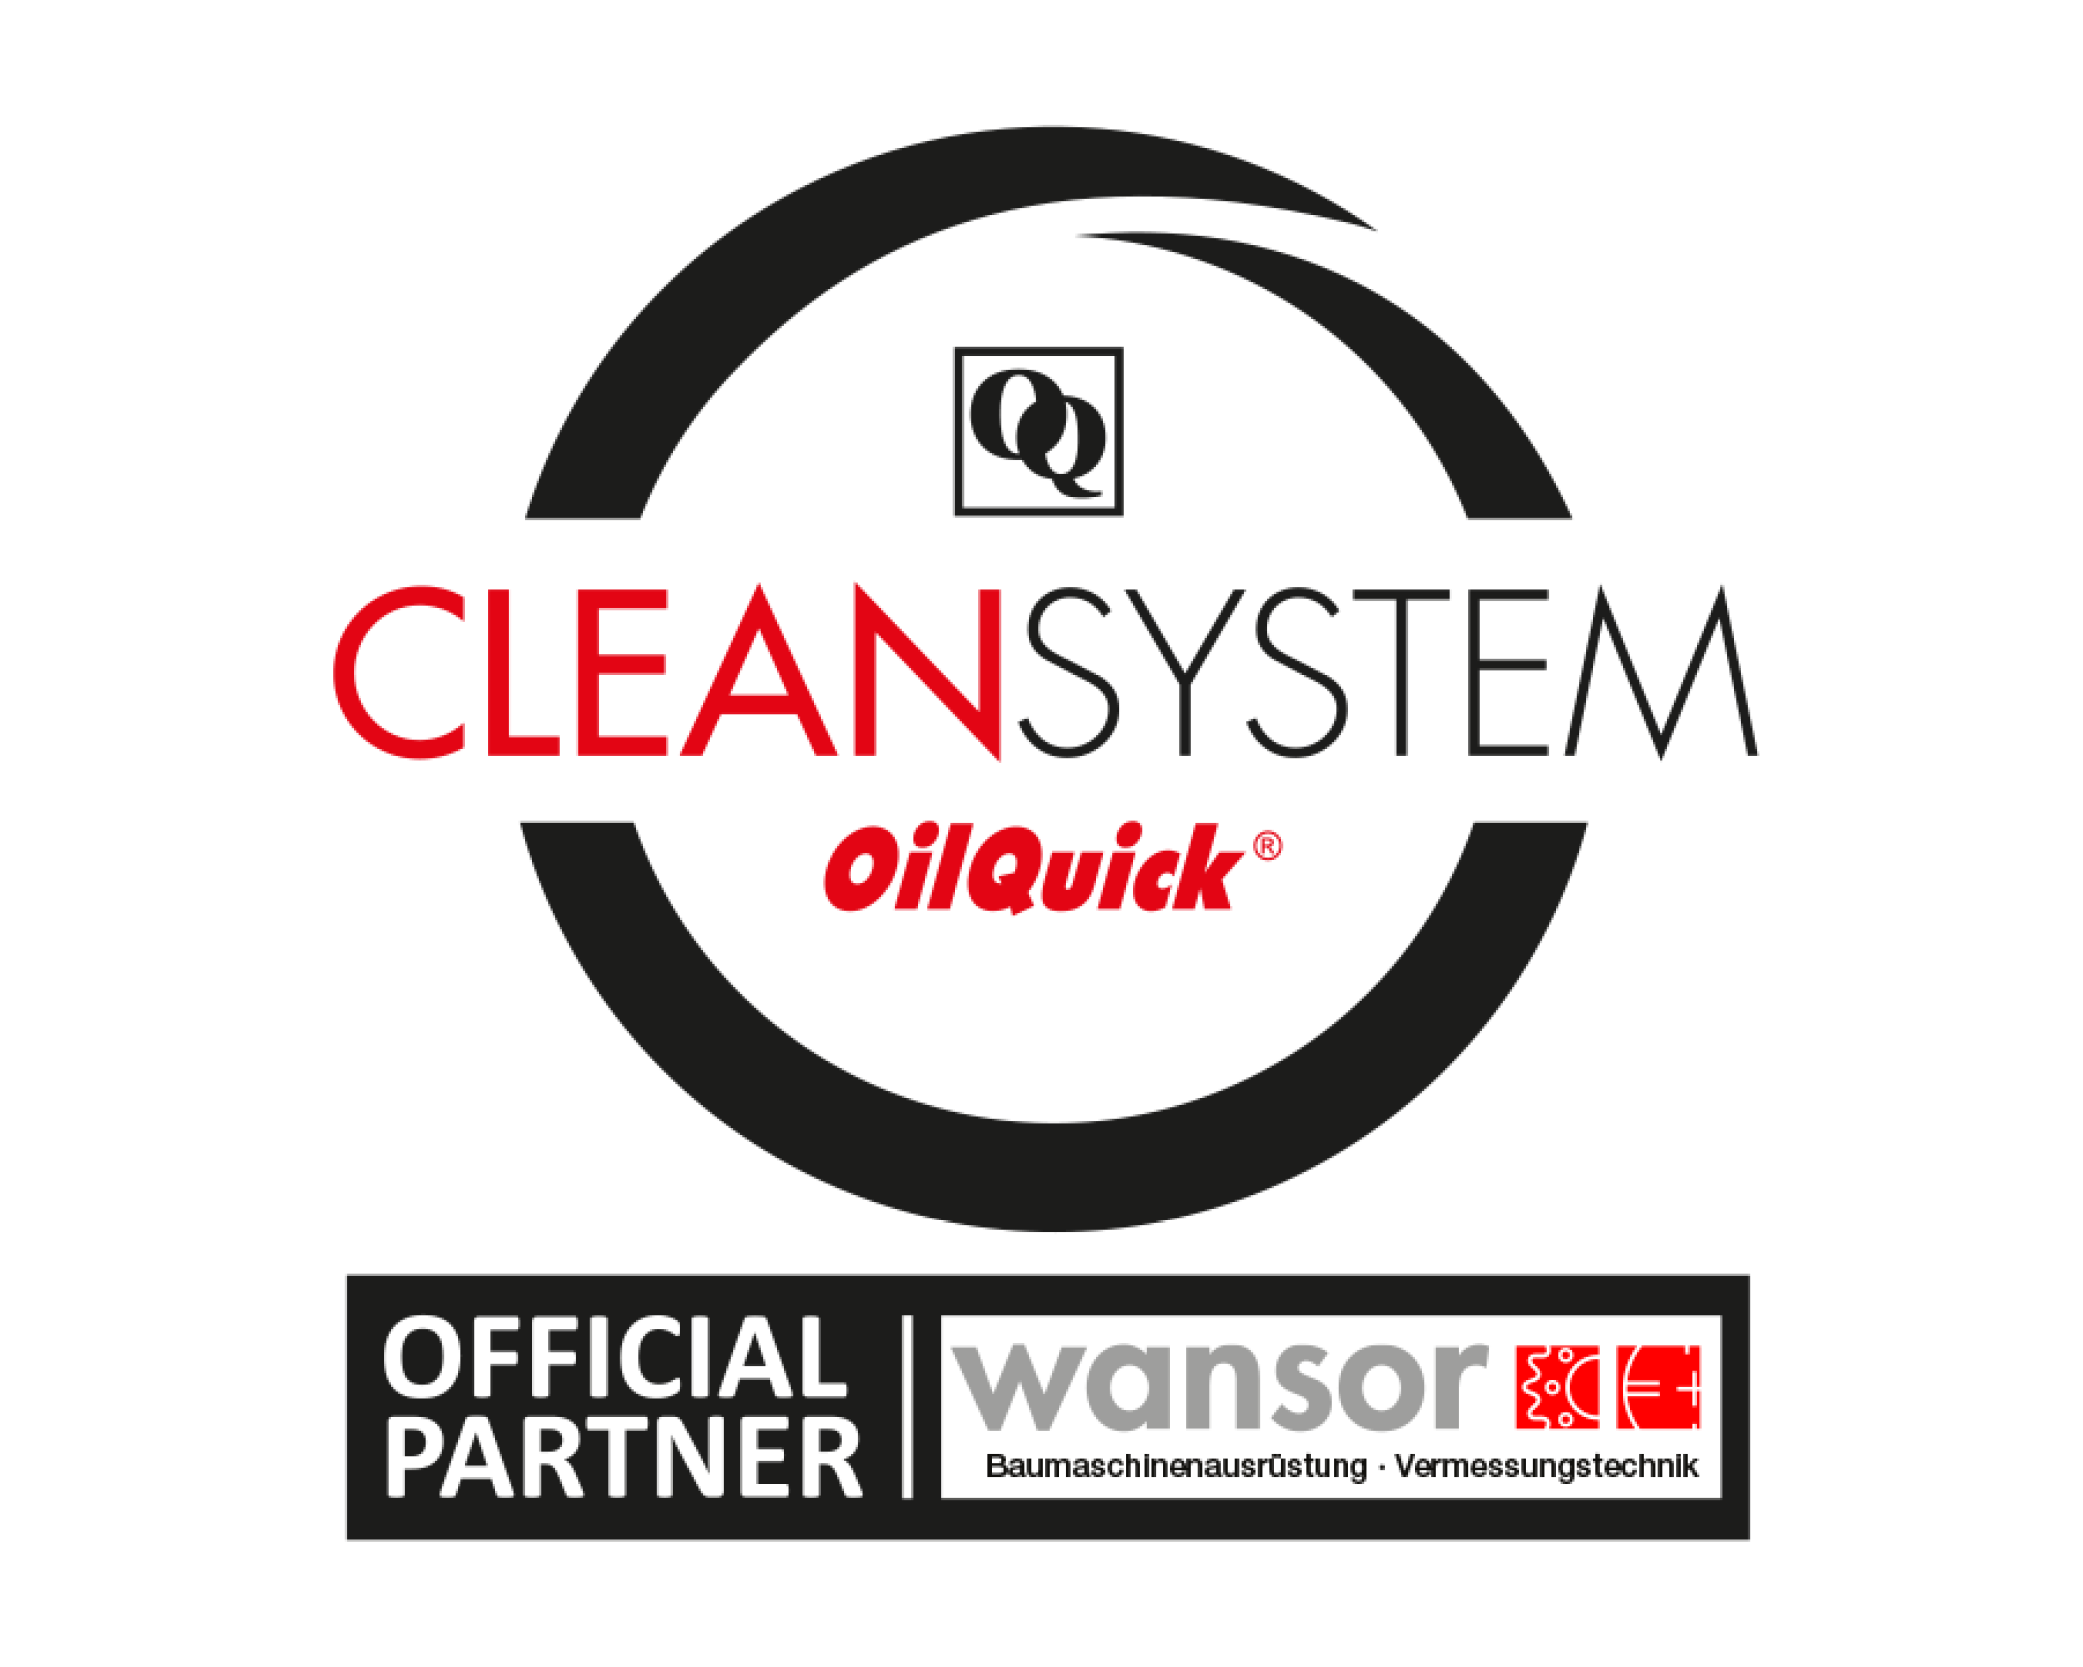 wansor_baumaschinenausrüstung_oilquick_partner_logo